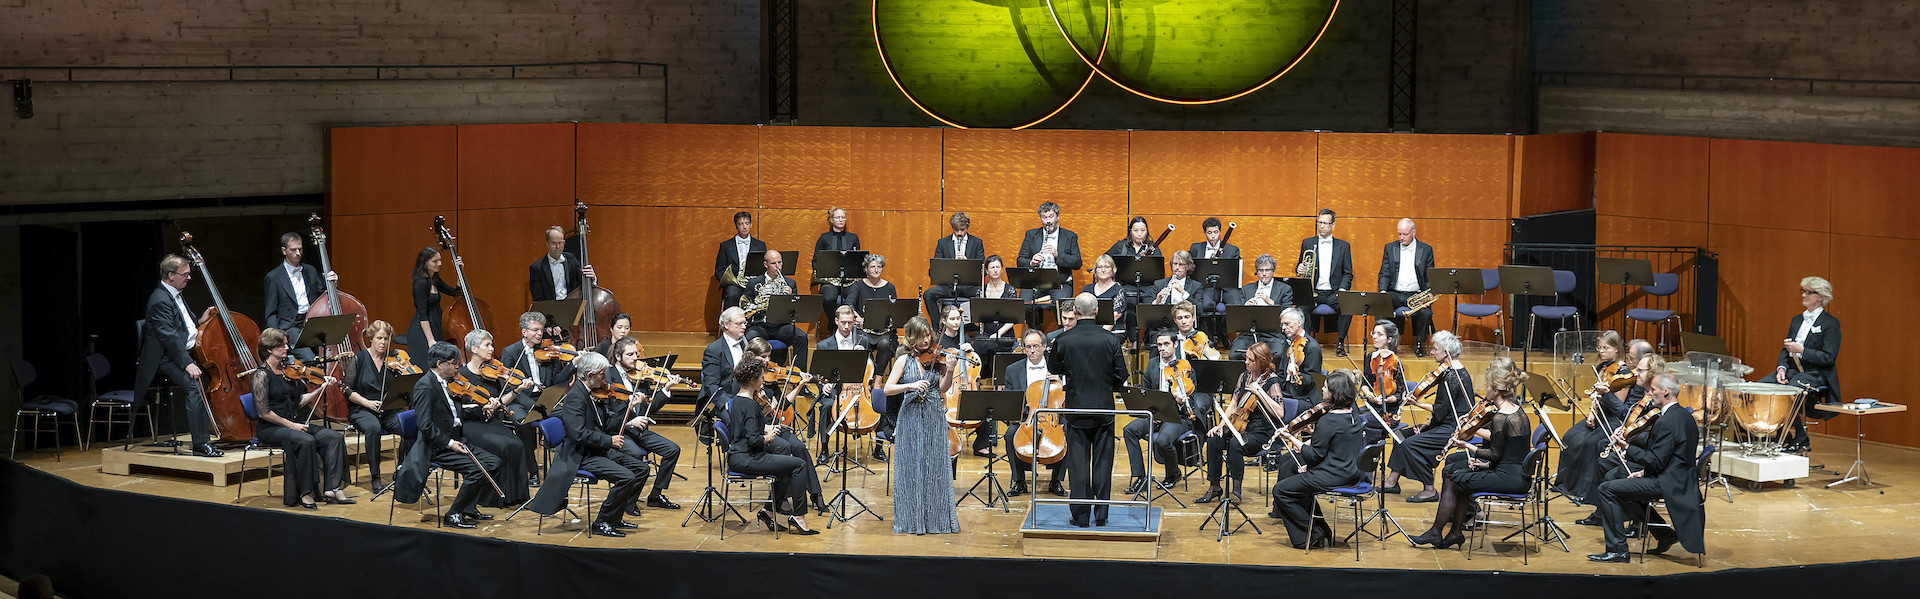 Orkester na odru med izvajanjem Audi koncerta.